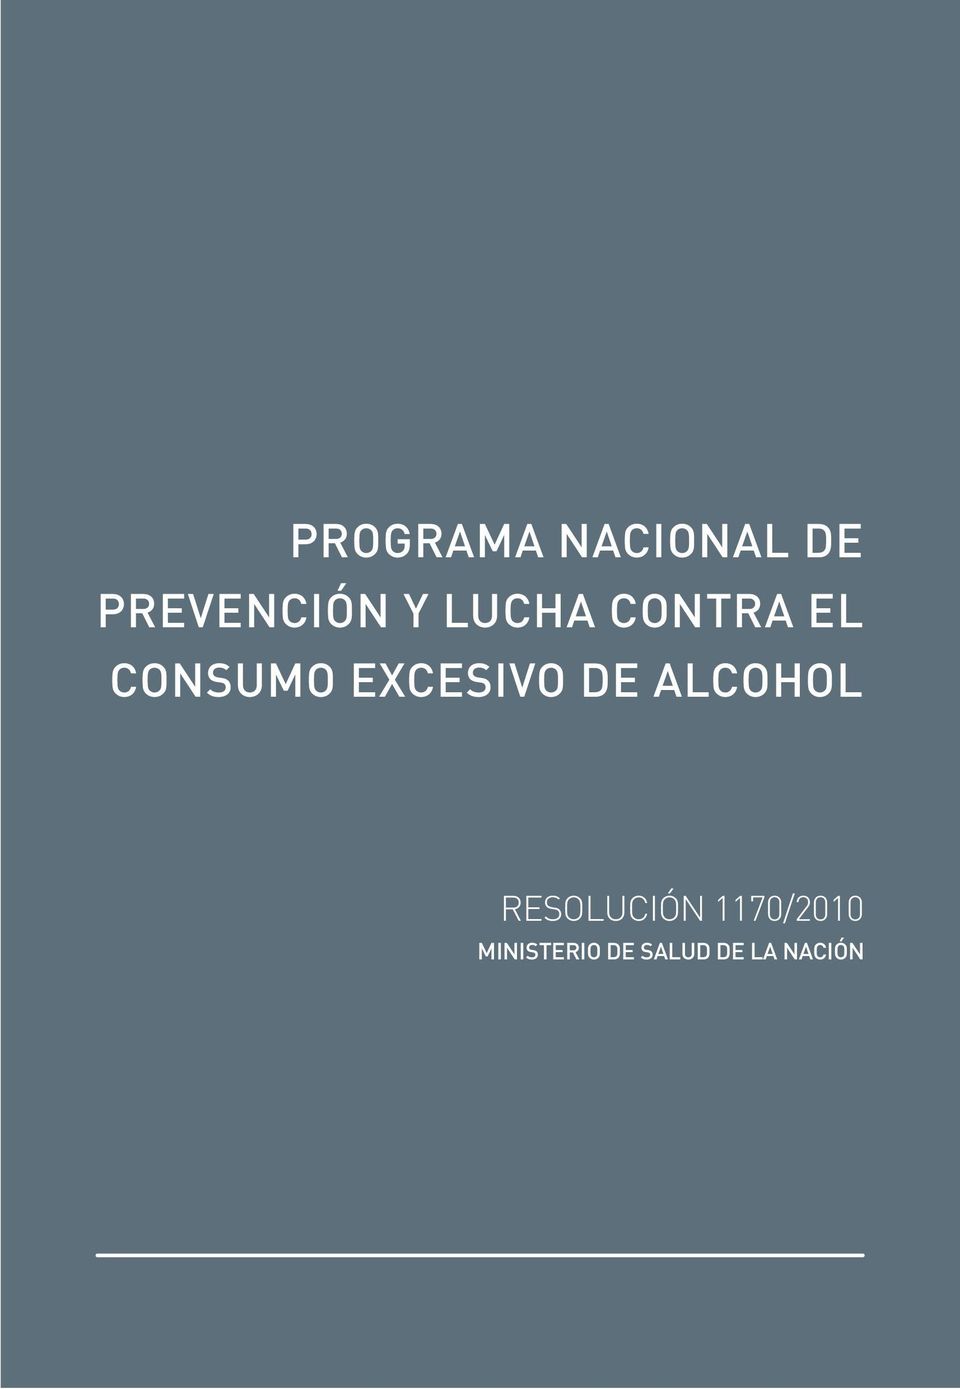 DE ALCOHOL RESOLUCIÓN 1170/2010